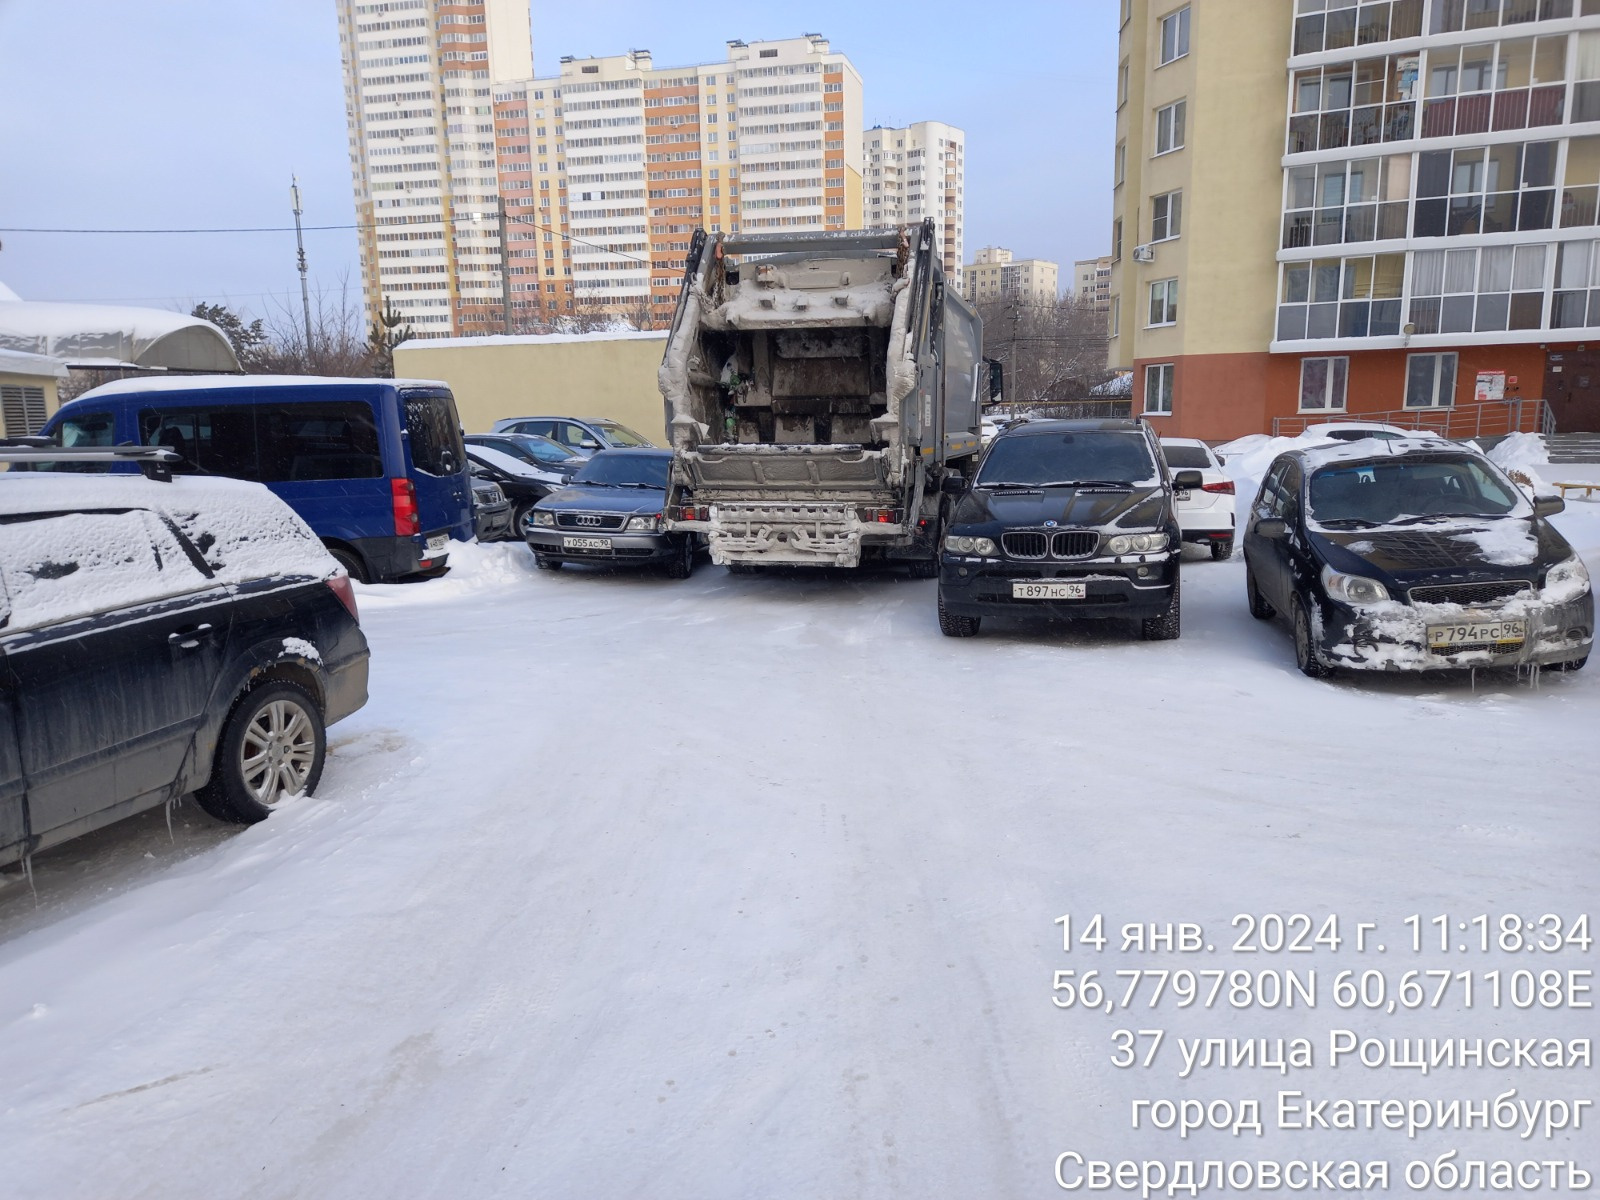 Коммунальщики объяснили, почему в Екатеринбурге переполнены мусорные баки. Виноваты жители